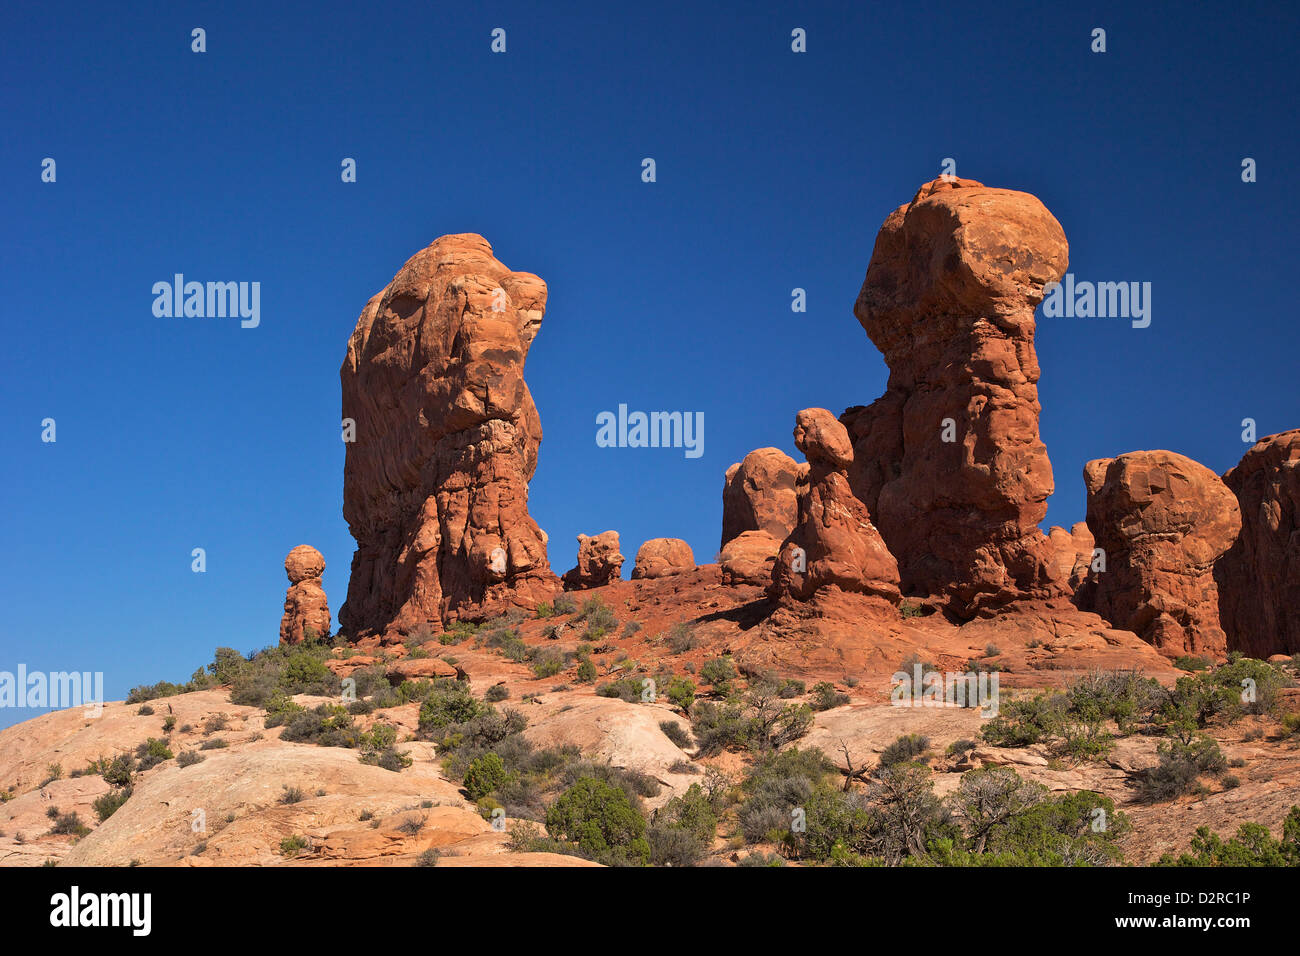 Giardino di Eden, Arches National Park, Moab, Utah, Stati Uniti d'America, America del Nord Foto Stock